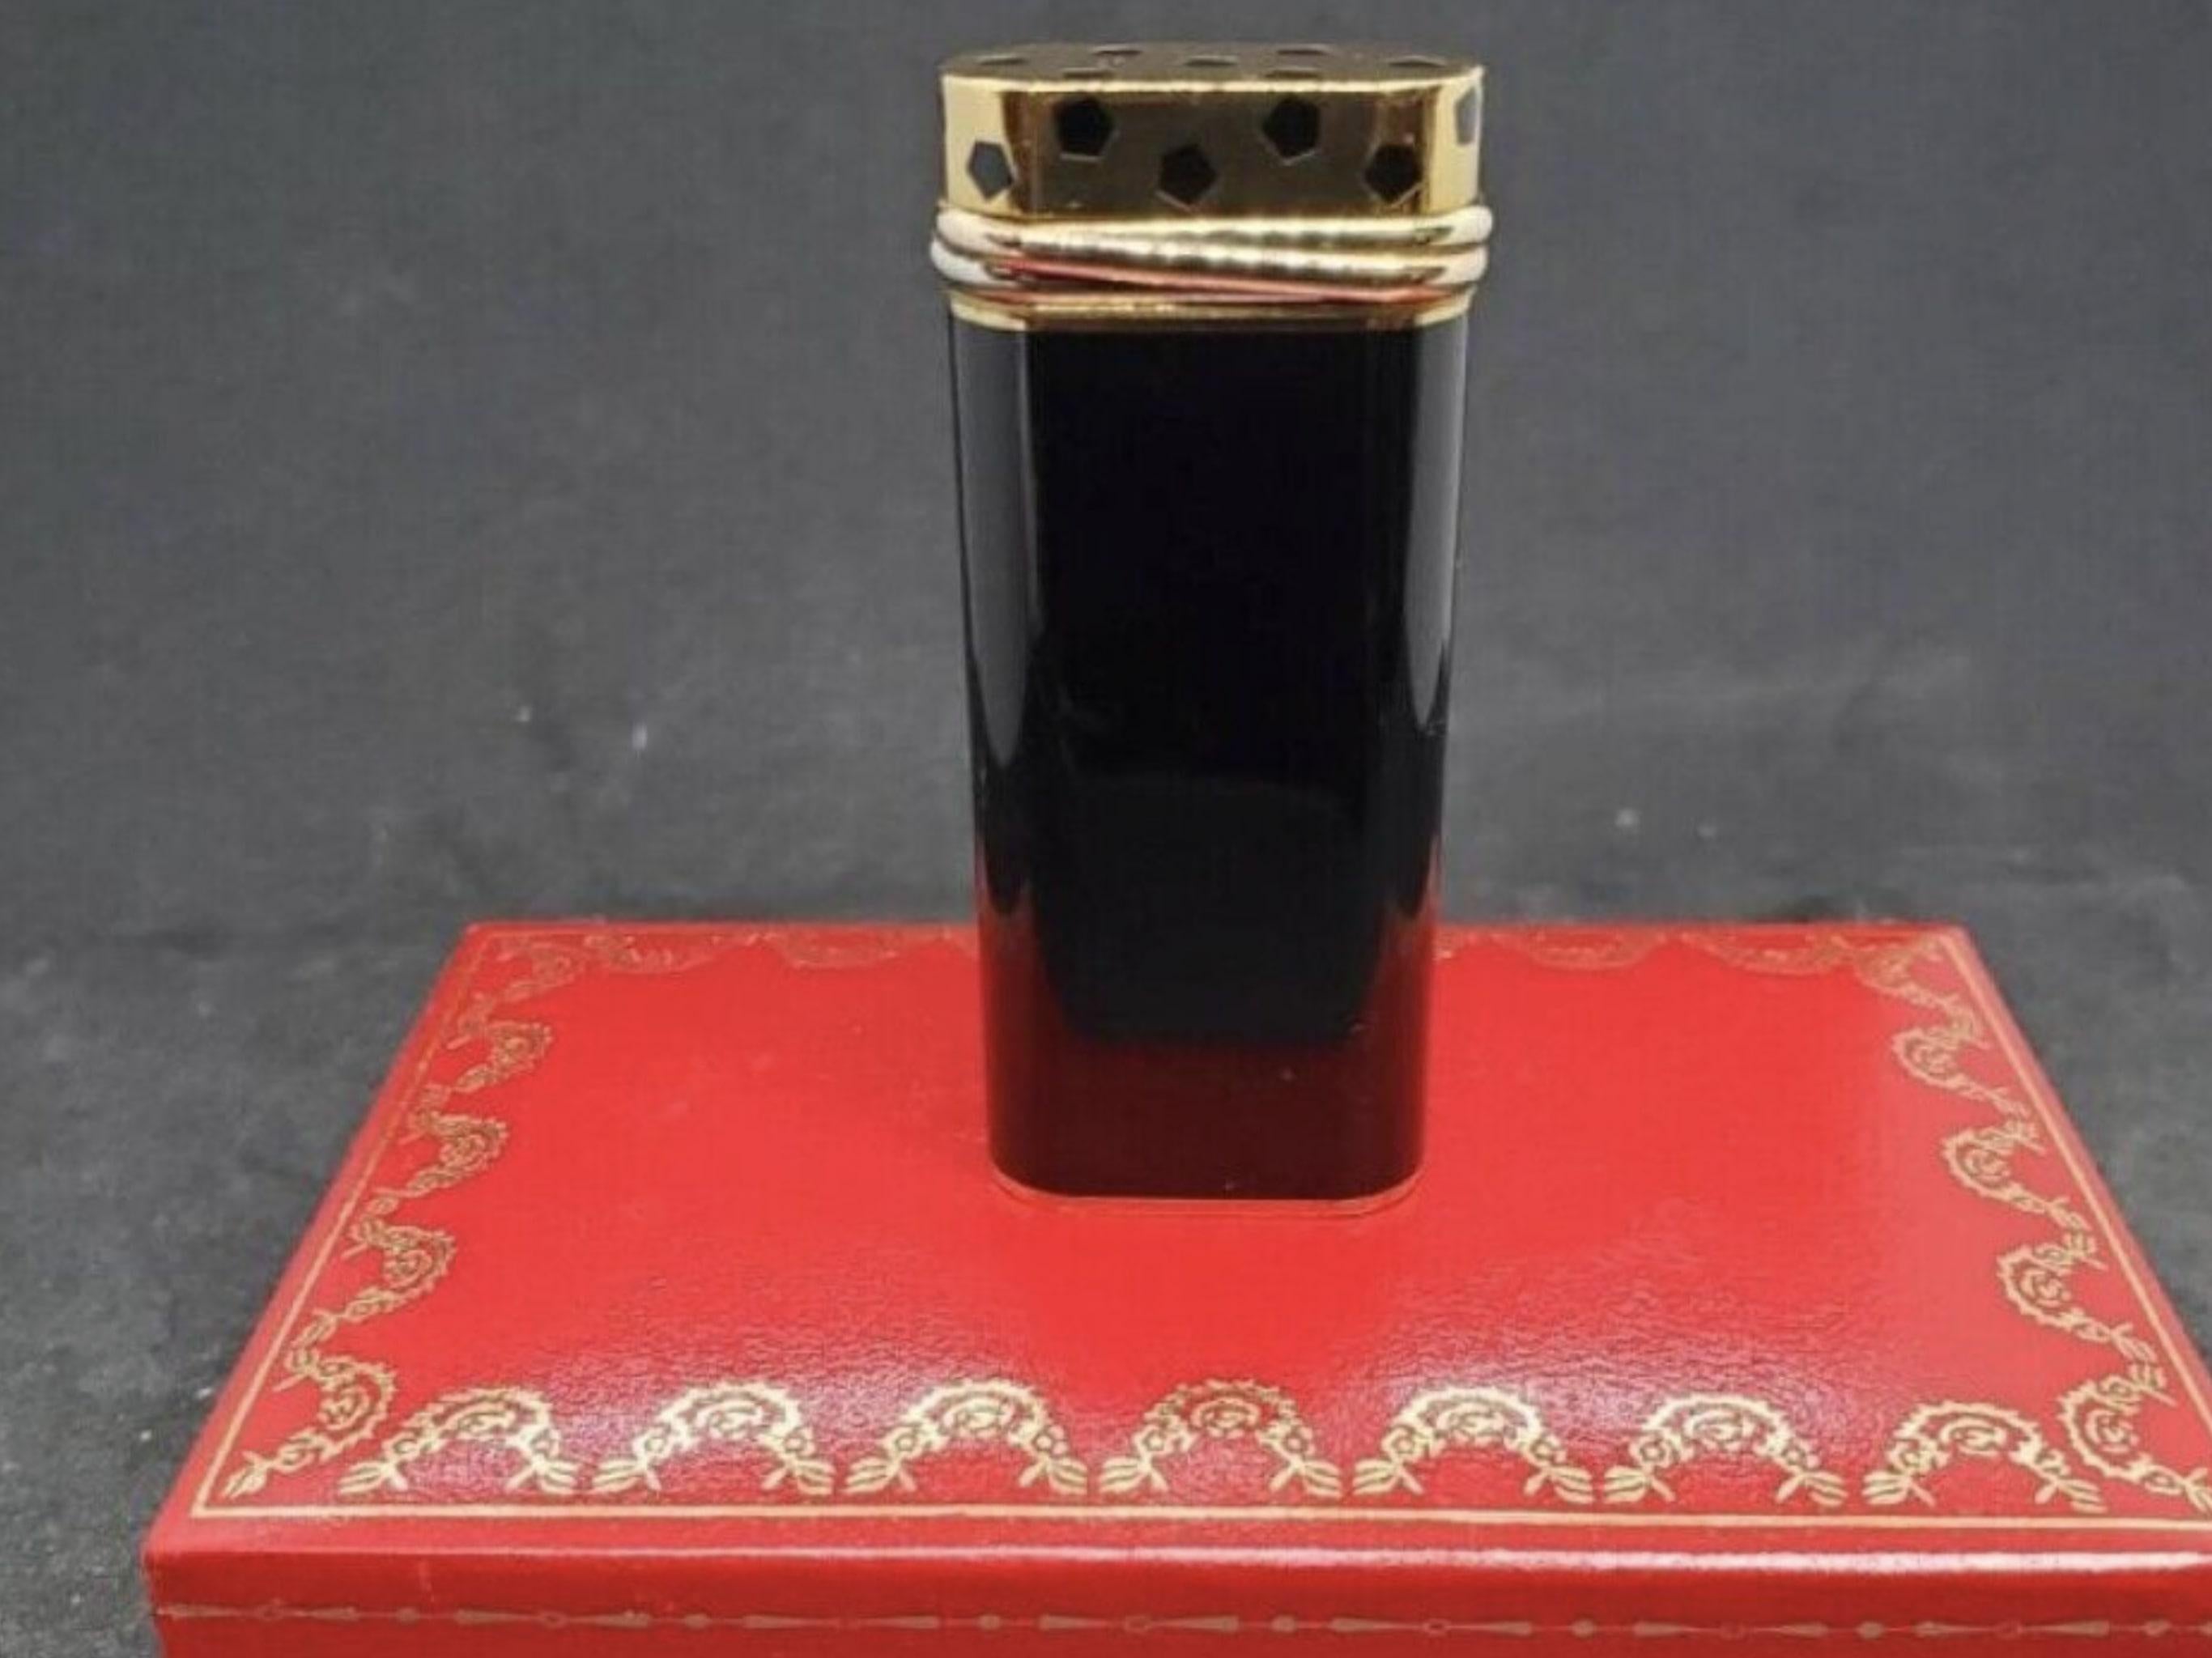 Le Must De Cartier Rare Vintage Retro “Trinity” Black Lacquer & Gold Lighter For Sale 3